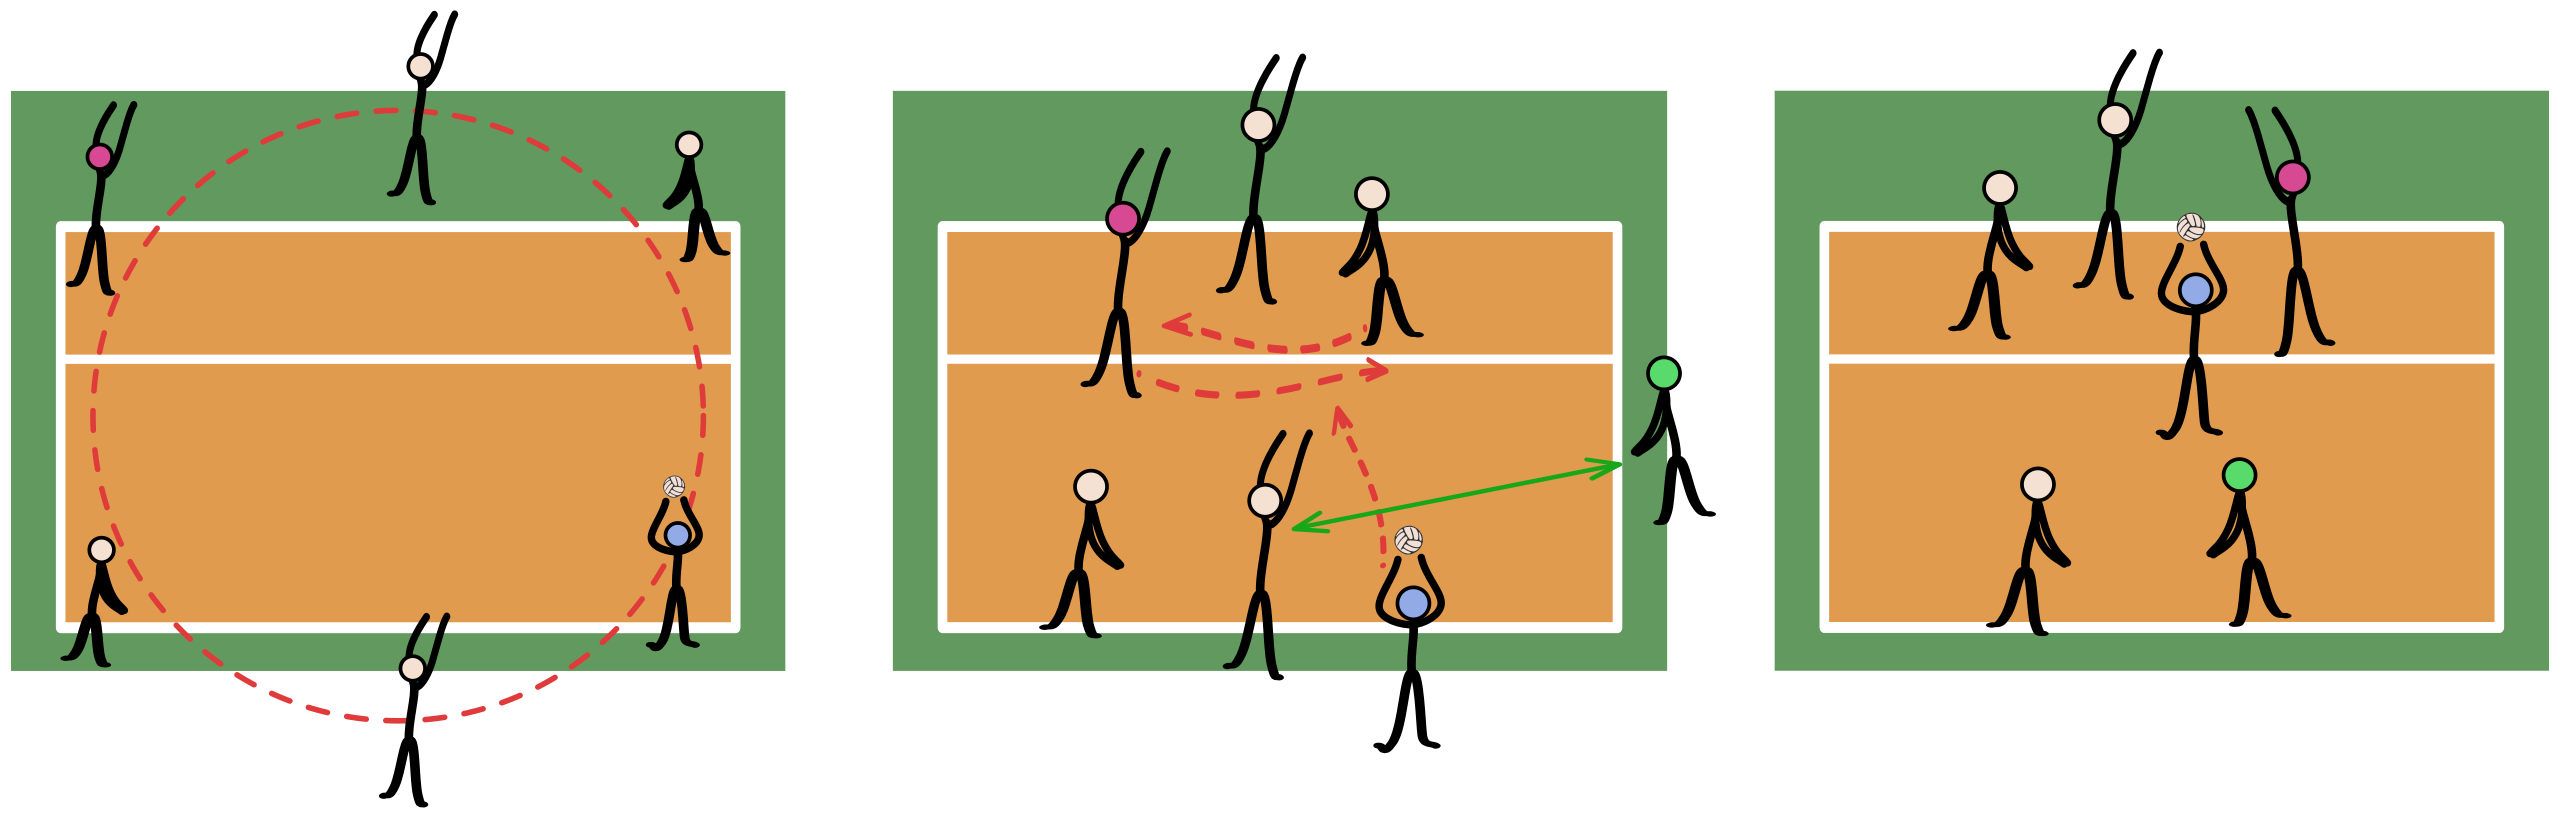 Игра в волейбол заканчивается при счете. Расстановка в волейболе 5-1. Расстановка связующего в волейболе 5-1. Расположение игроков в волейболе. Схема перехода в волейболе.